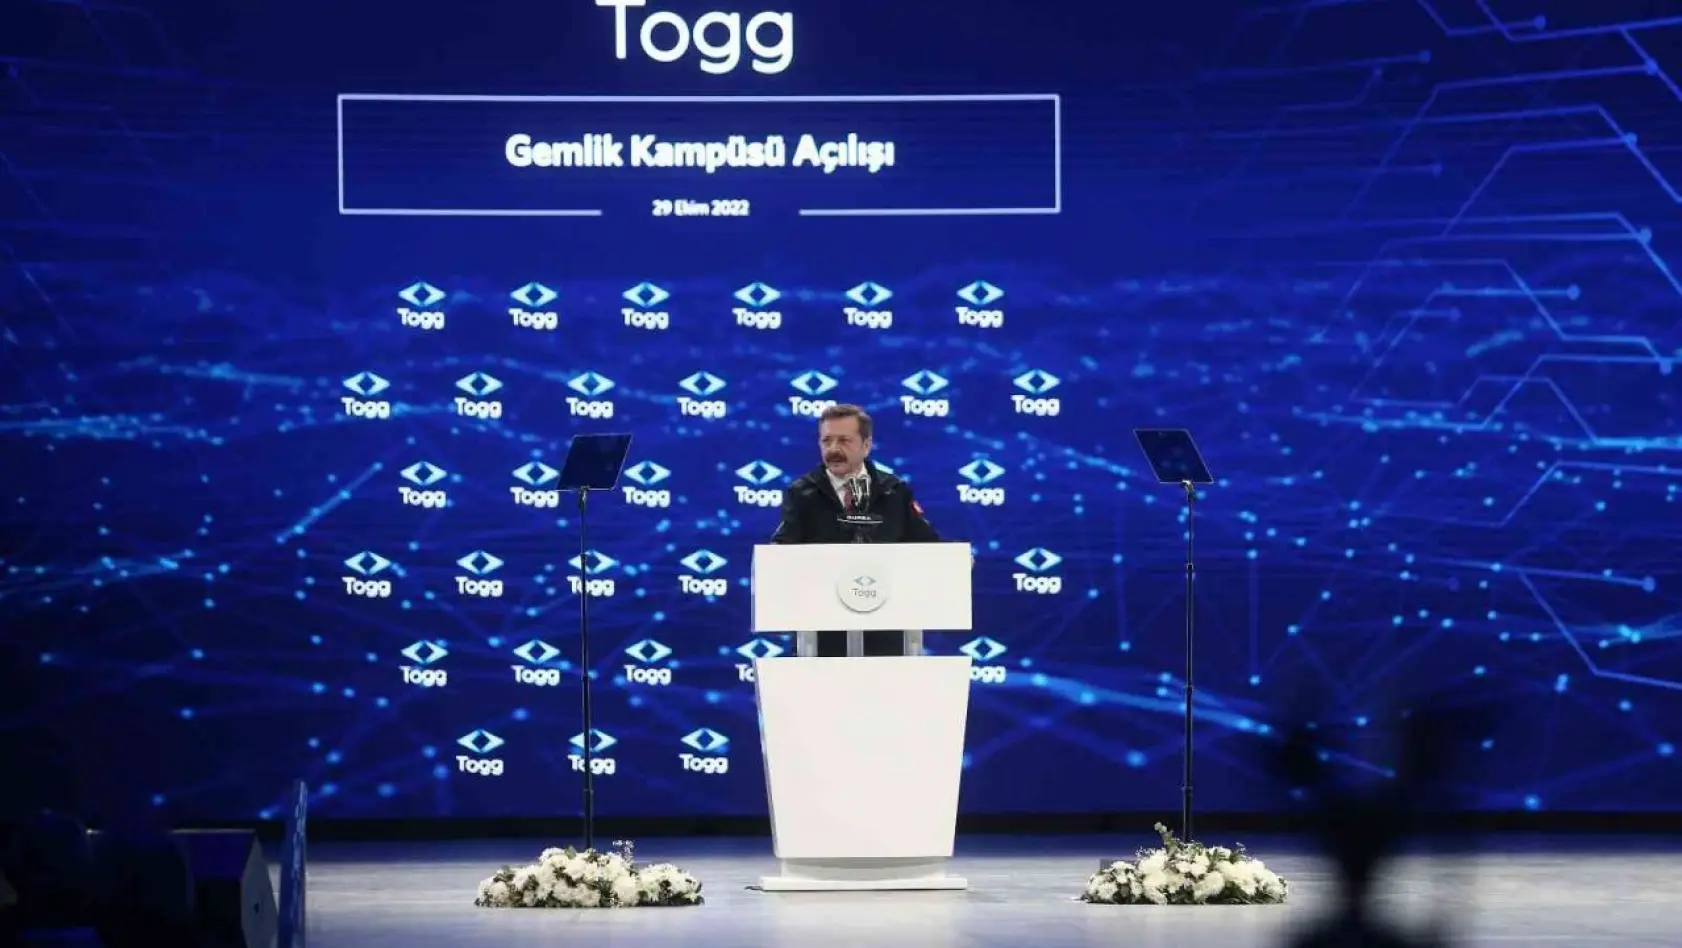 TOBB Başkanı Hisarcıklıoğlu: 'Bir söz daha veriyoruz, önce Avrupa'ya sonra tüm dünyaya Türkiye'nin otomobilini satacağız'